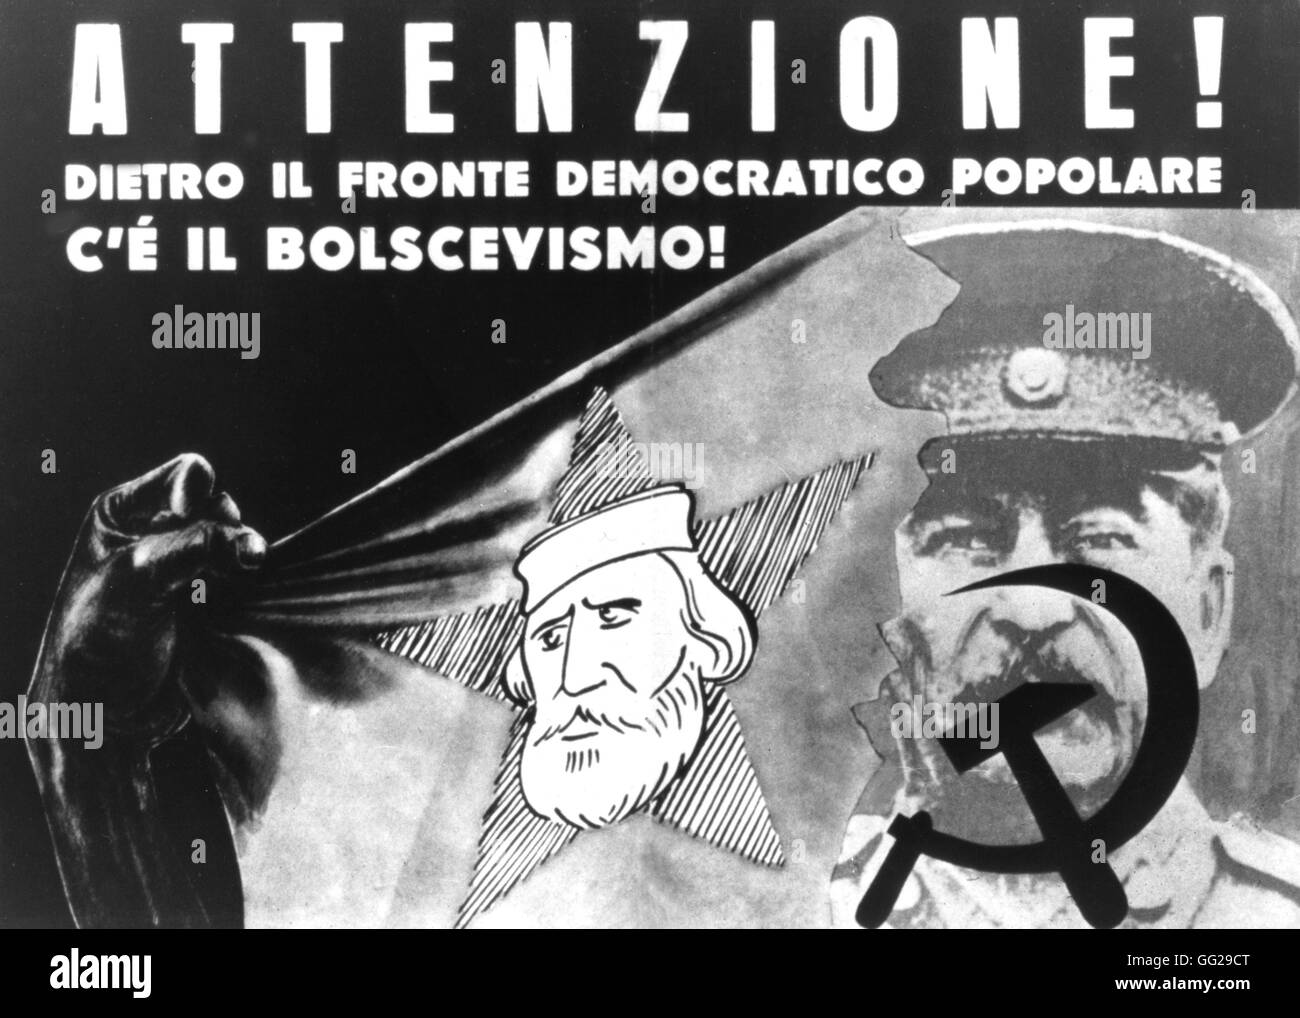 Affiches de propagande électorale de la démocratie Chistian contre le Front démocratique populaire italien Italie 1948, Bibliothèque du Congrès de Washington Banque D'Images